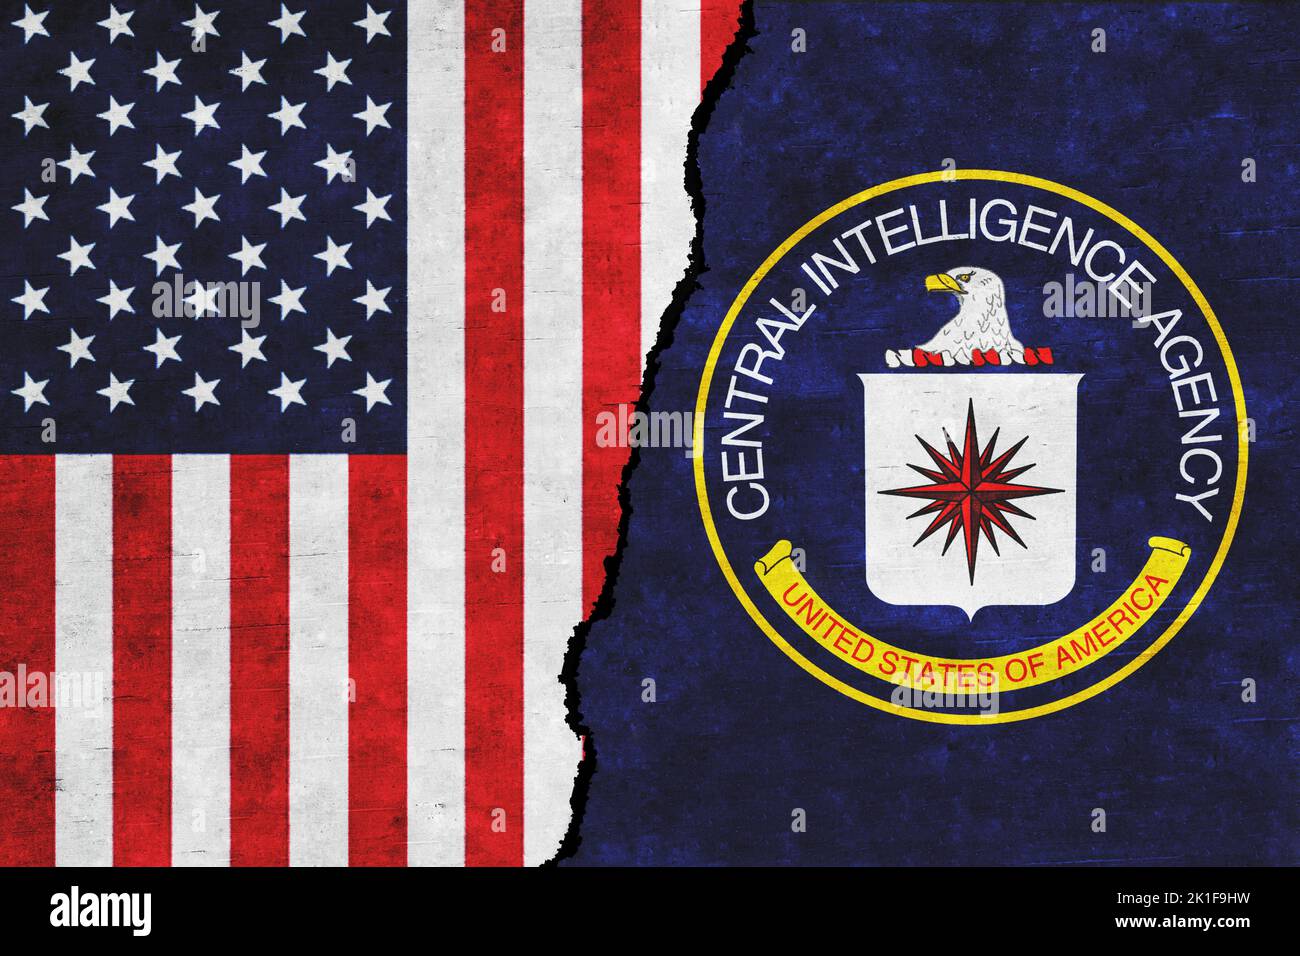 Die USA und die Central Intelligence Agency (CIA) gemeinsam kennzeichnen. Beziehungen zwischen den USA und der CIA. Stockfoto